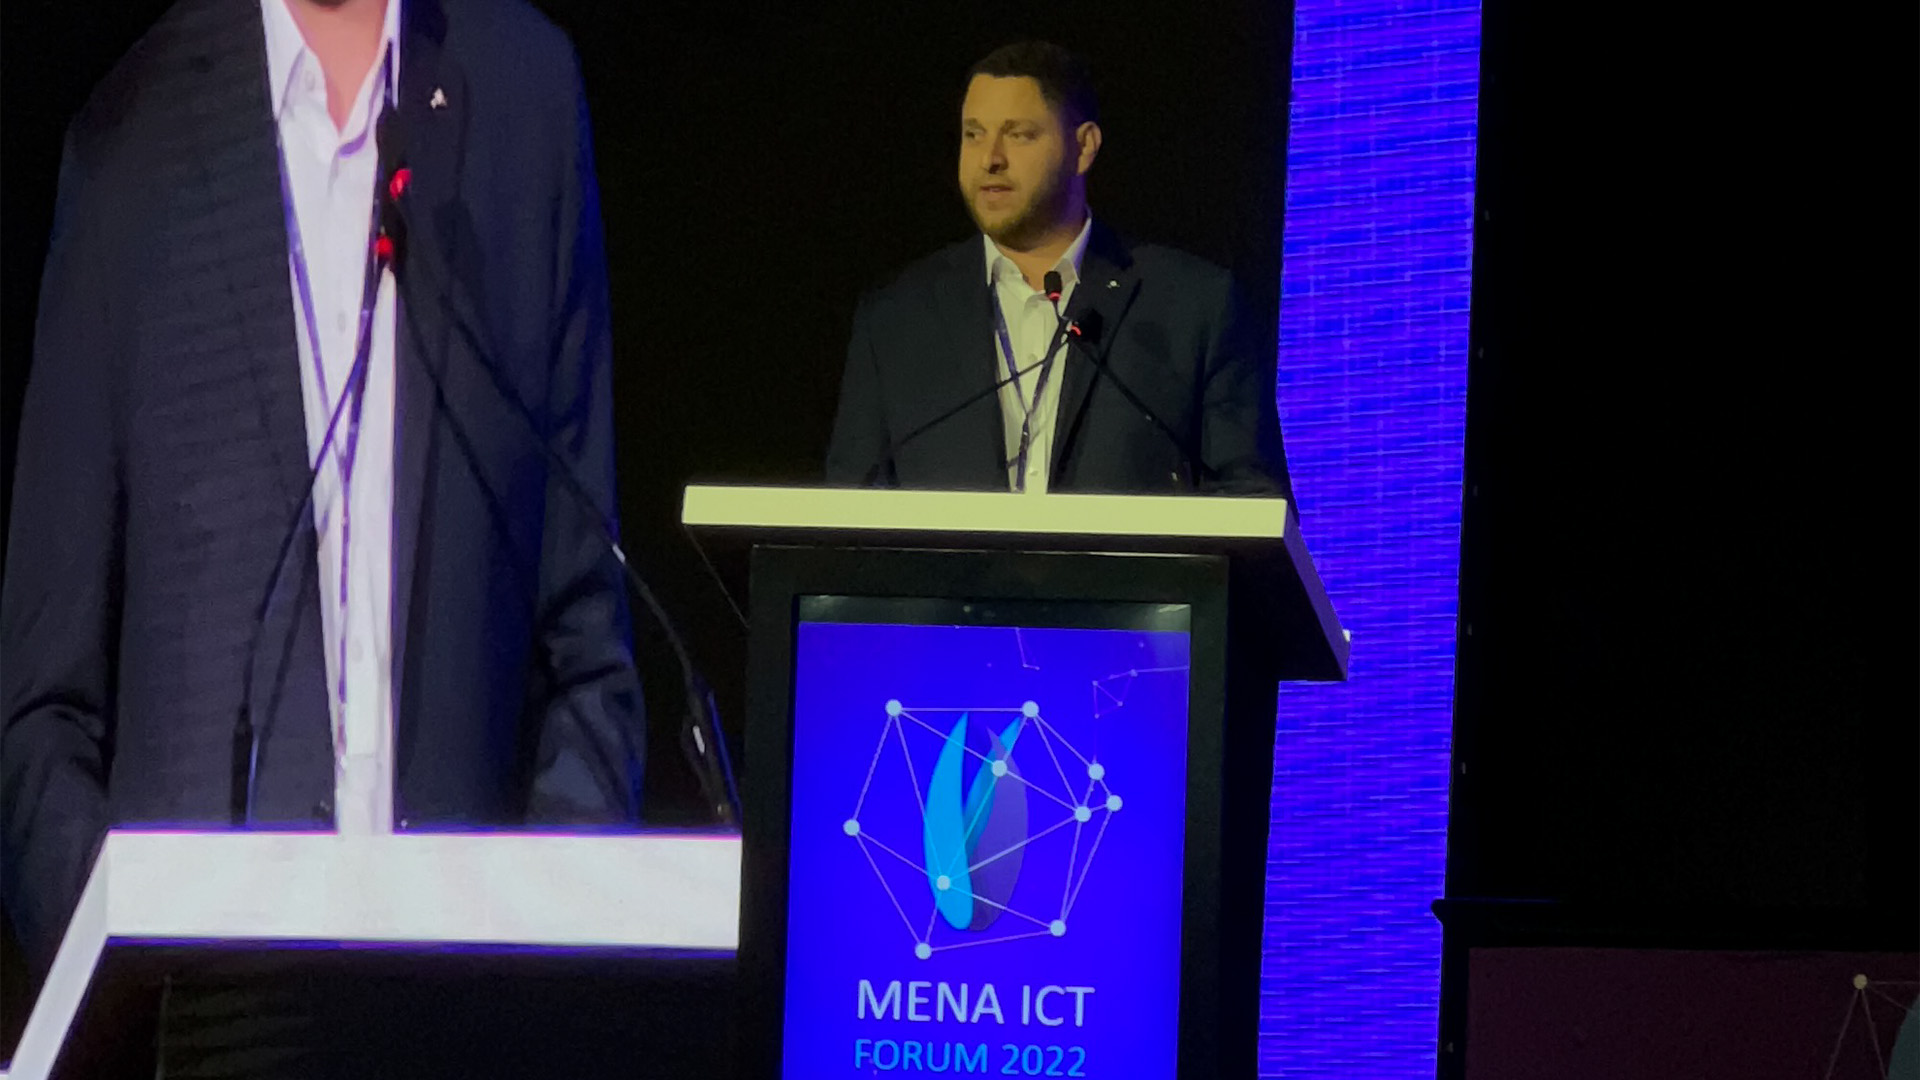 Sager Participates in MENA ICT Forum